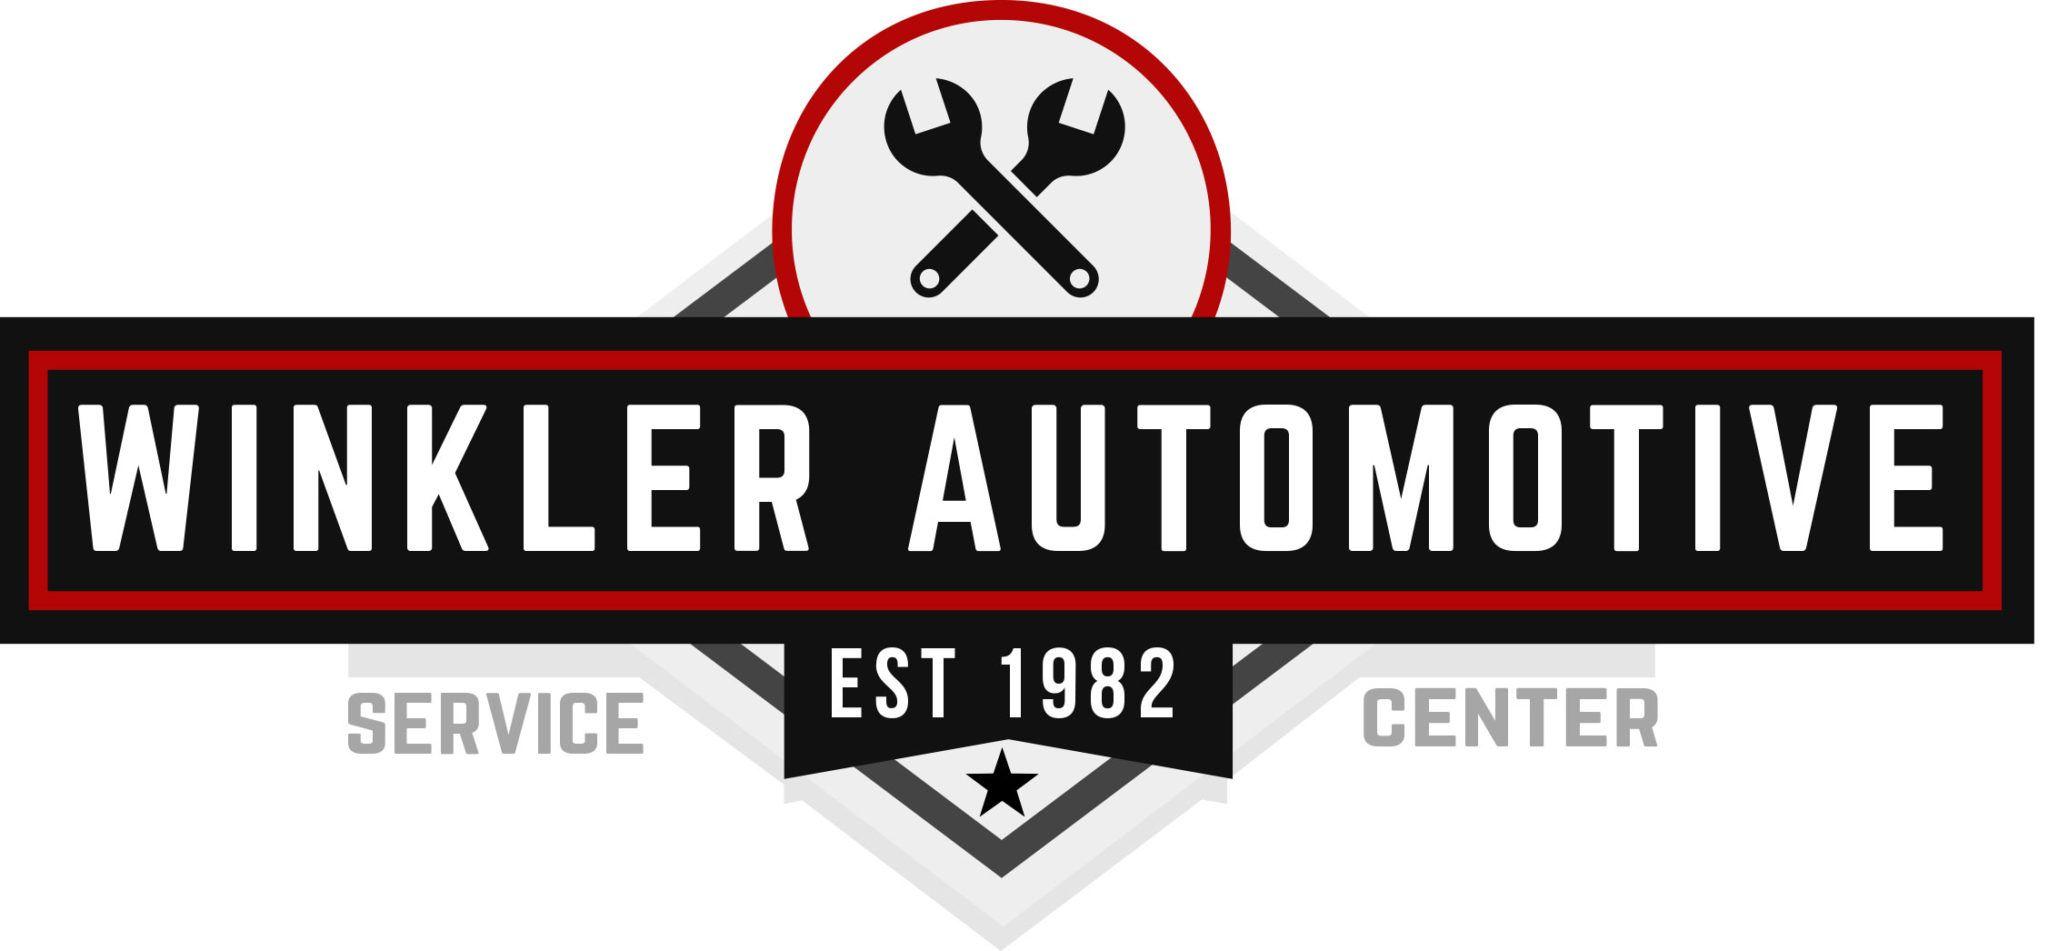 Automotive Service Center Logo - Winkler Automotive Service Center - AutoServlistor